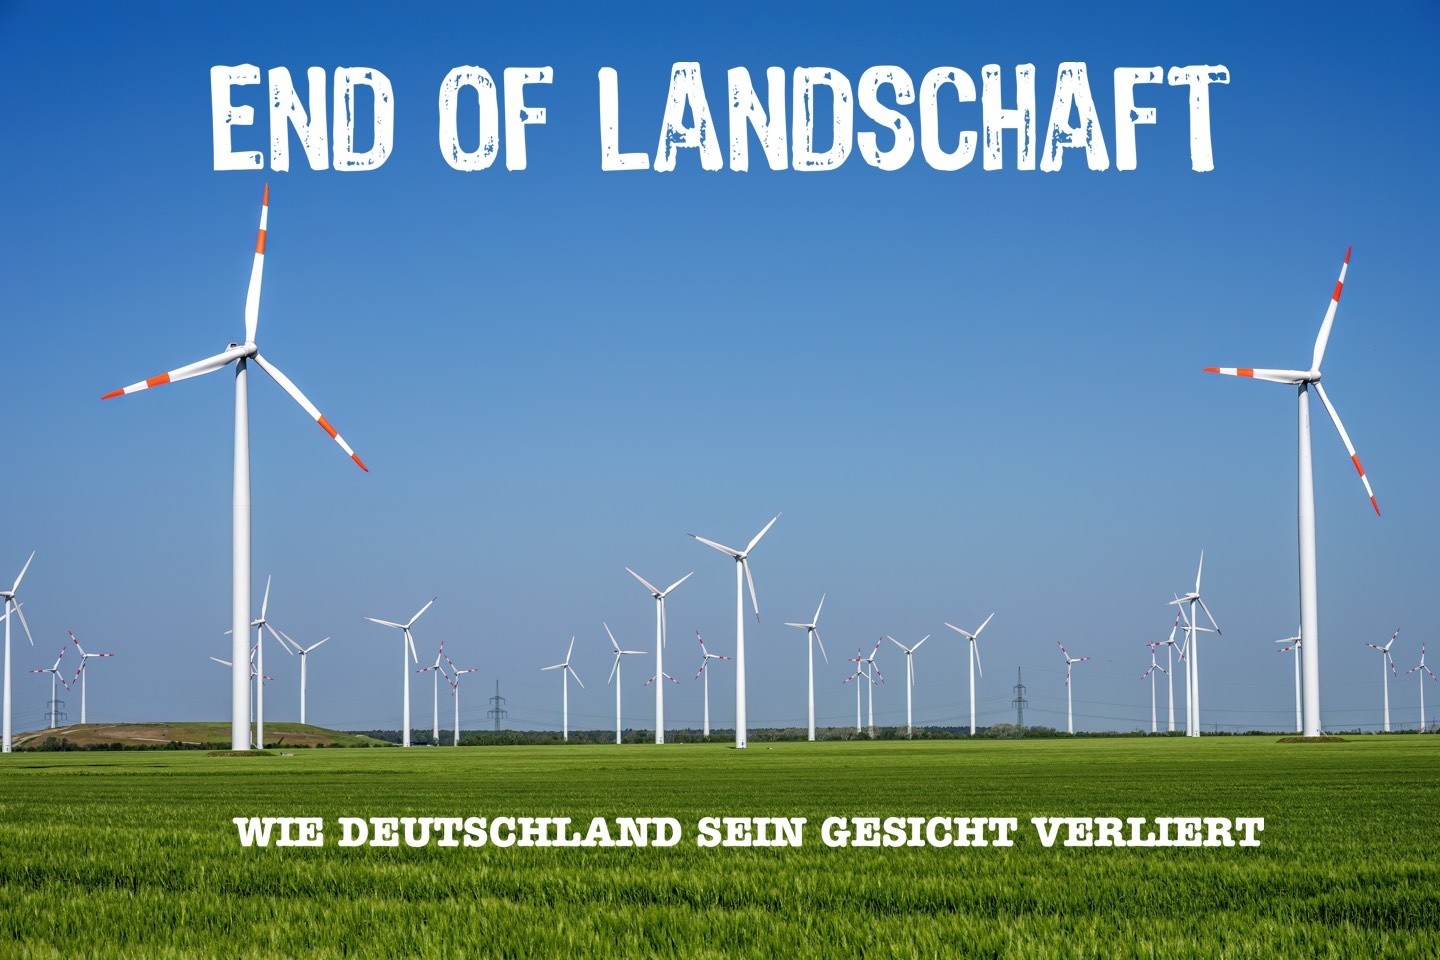 End of Landschaft, Milte,Warendorf,Kreis Warendorf;Windenergie,Windkraftrad,Windenergie,Umweltschutz,Natur,